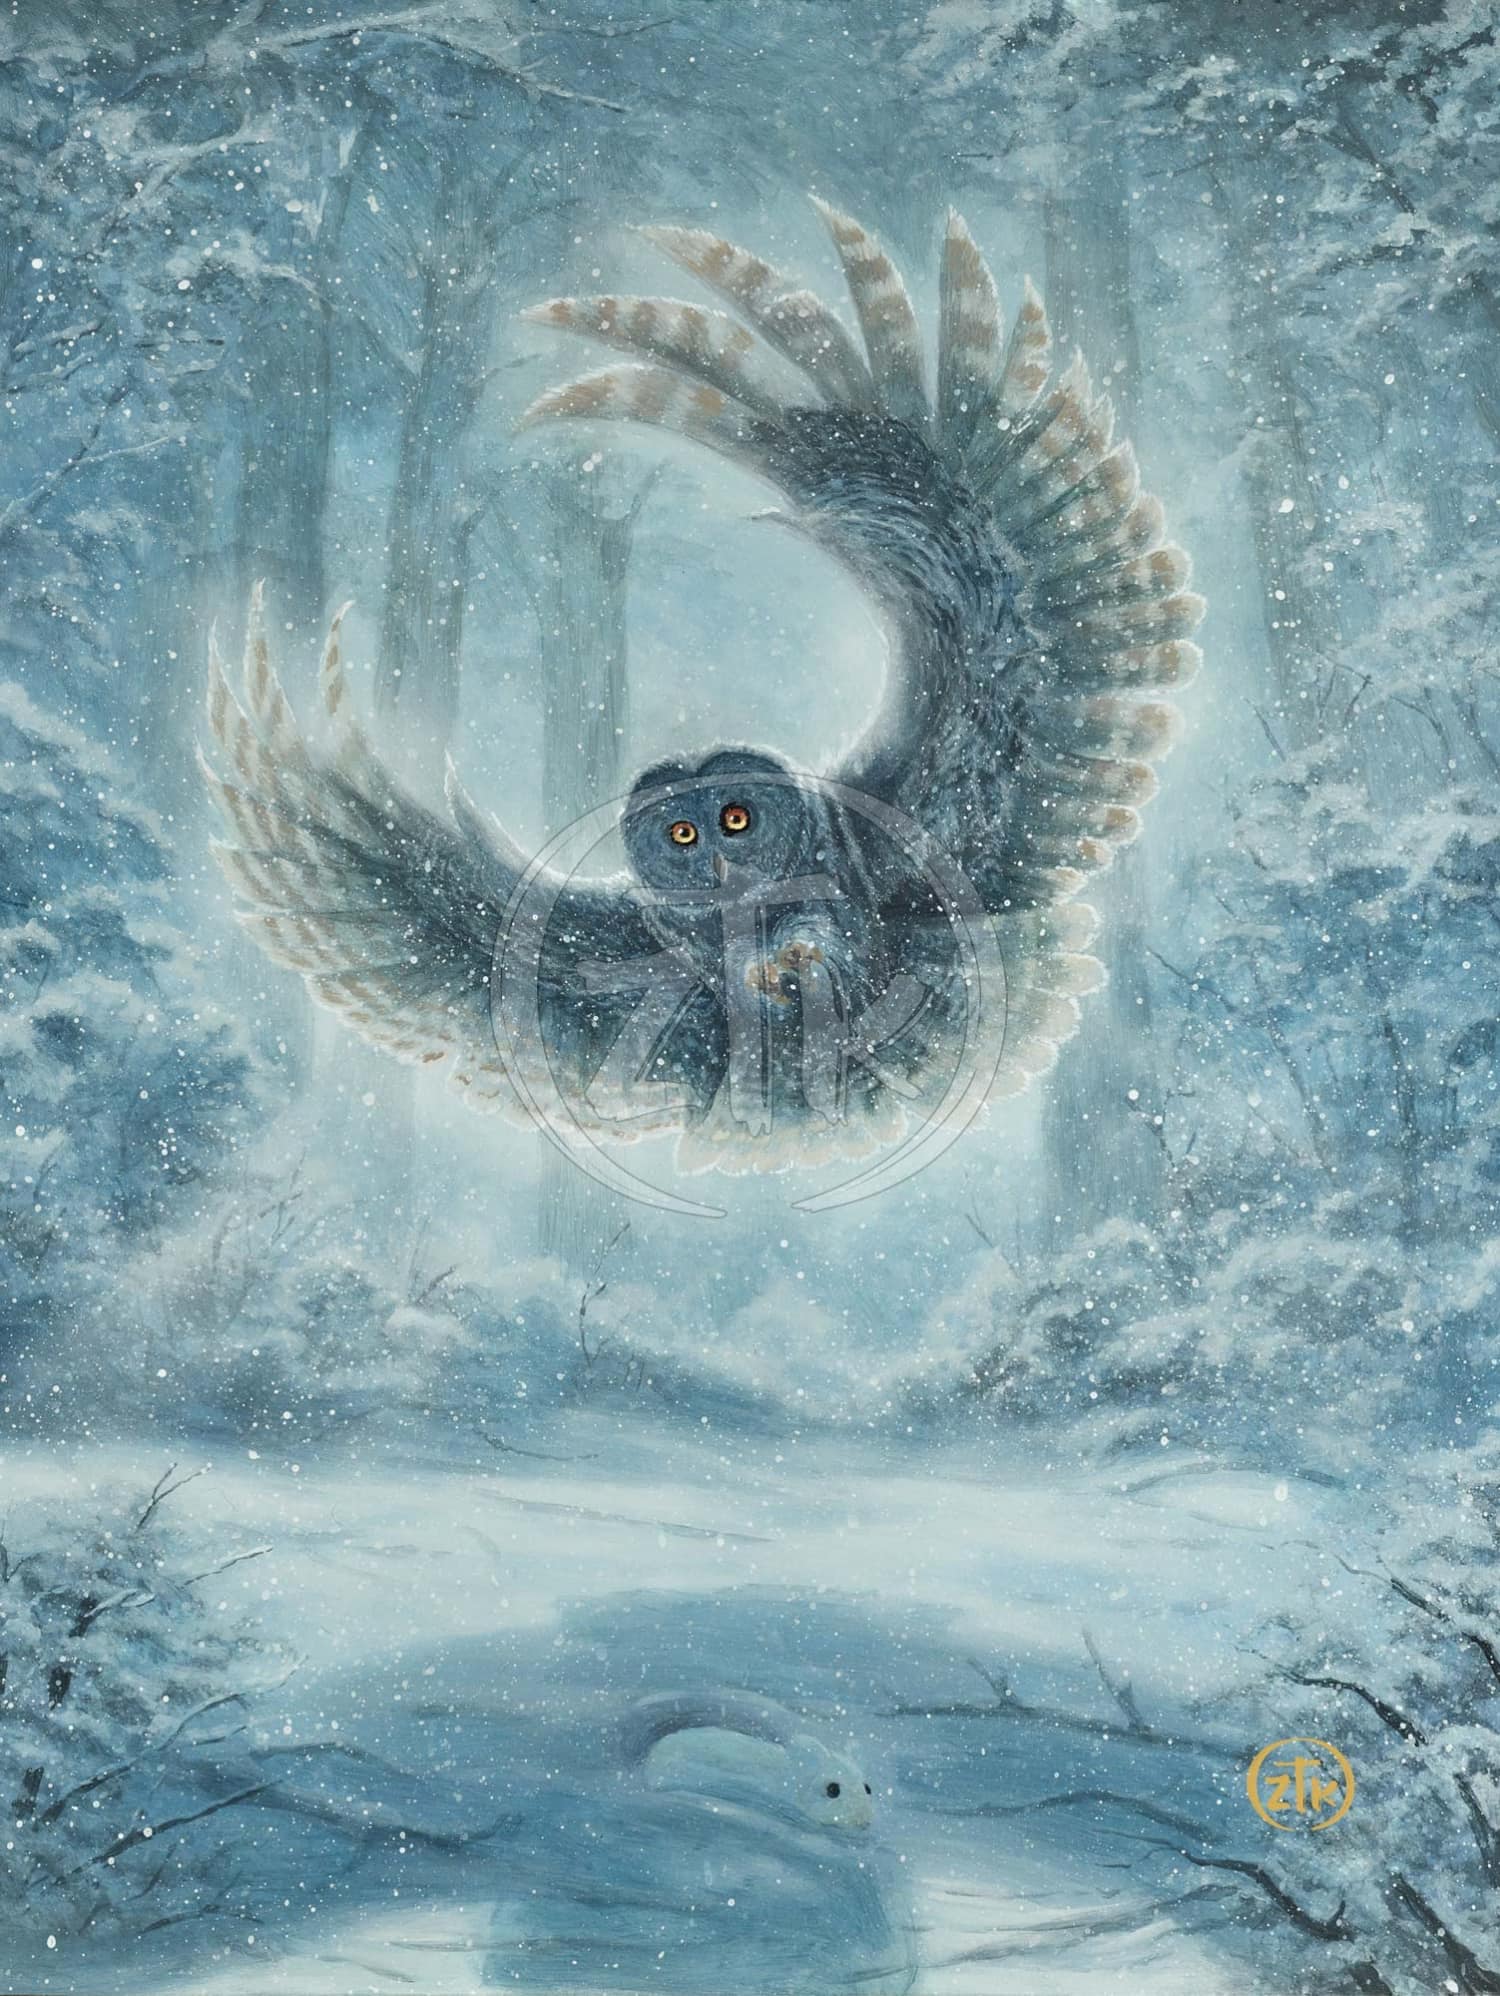 Snowy Owl painting by Zac Kinkade